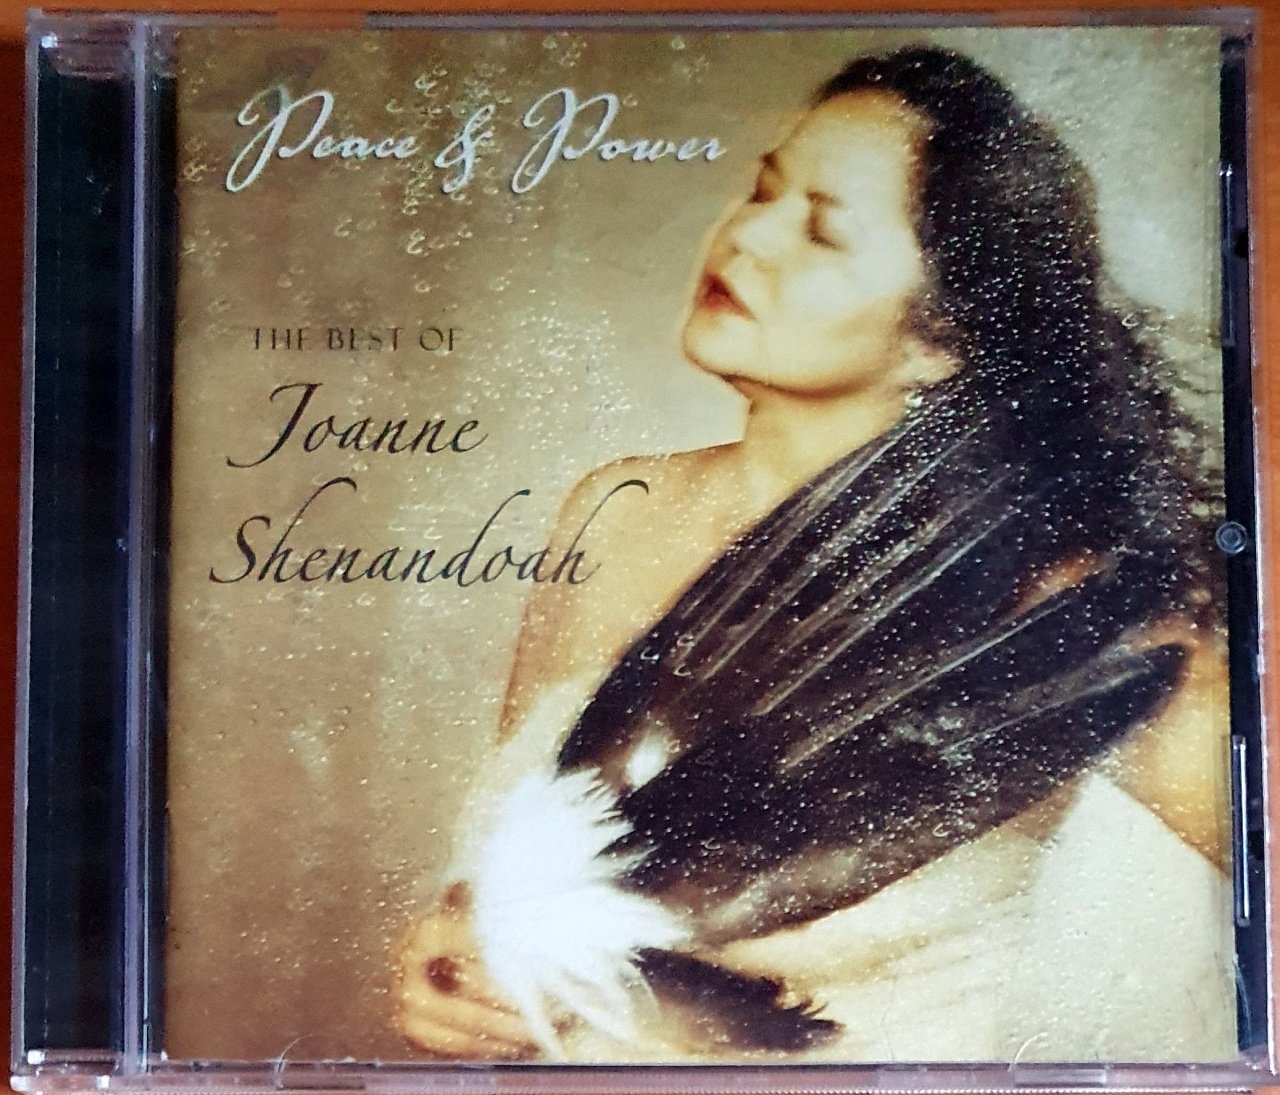 JOANNE SHENANDOAH - PEACE & POWER / THE BEST OF (2002) - CD 2.EL